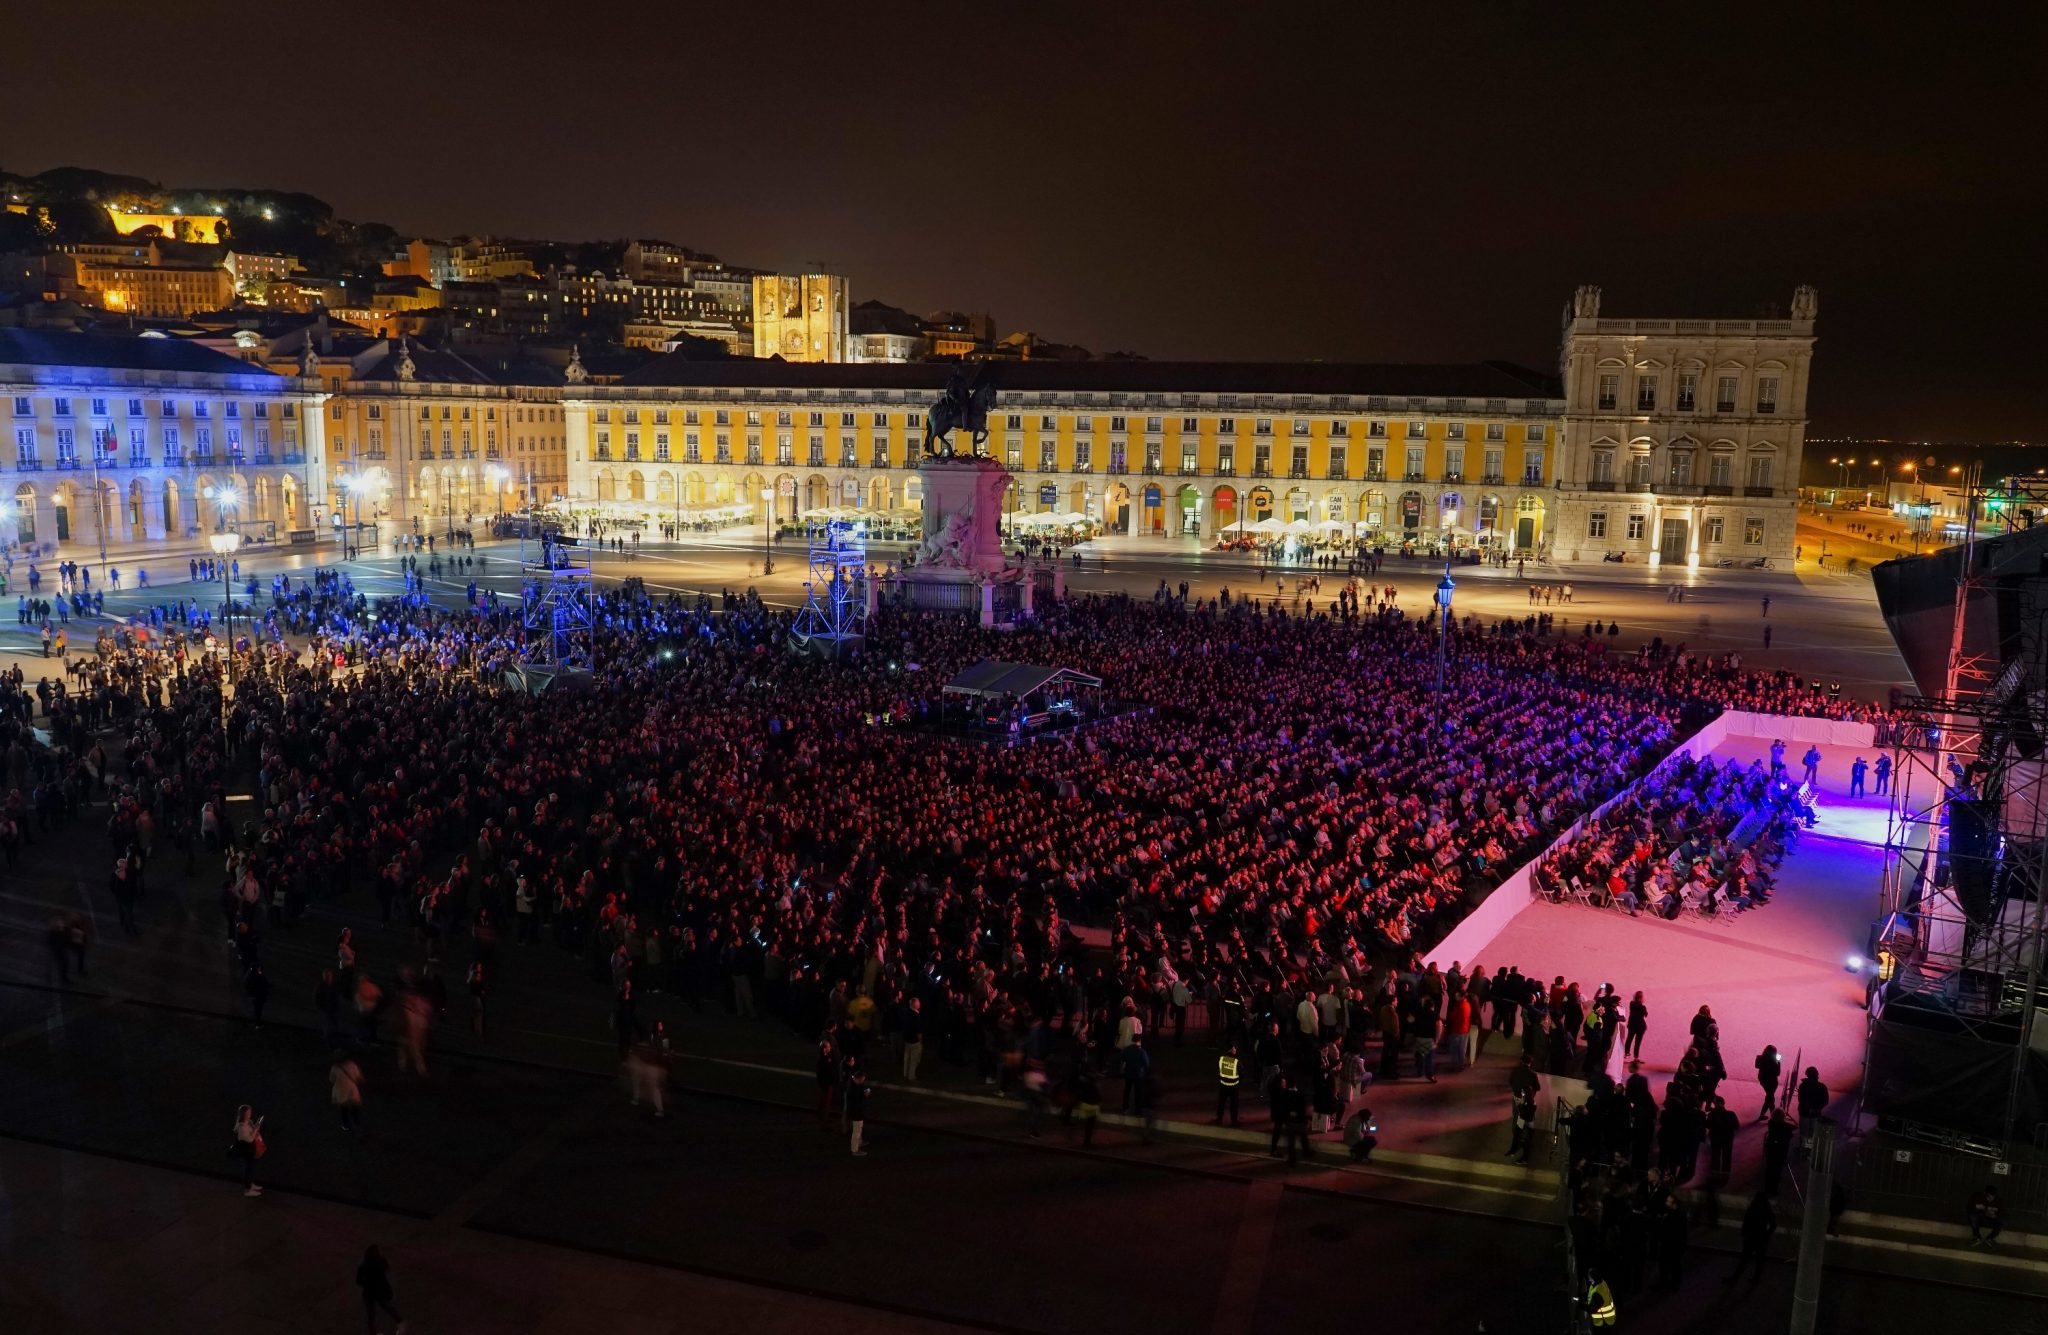 Vista noturna de uma multidão de pessoas na Praça do Comércio iluminada, encimada, do lado esquerdo, pela colina do Castelo de S. Jorge.